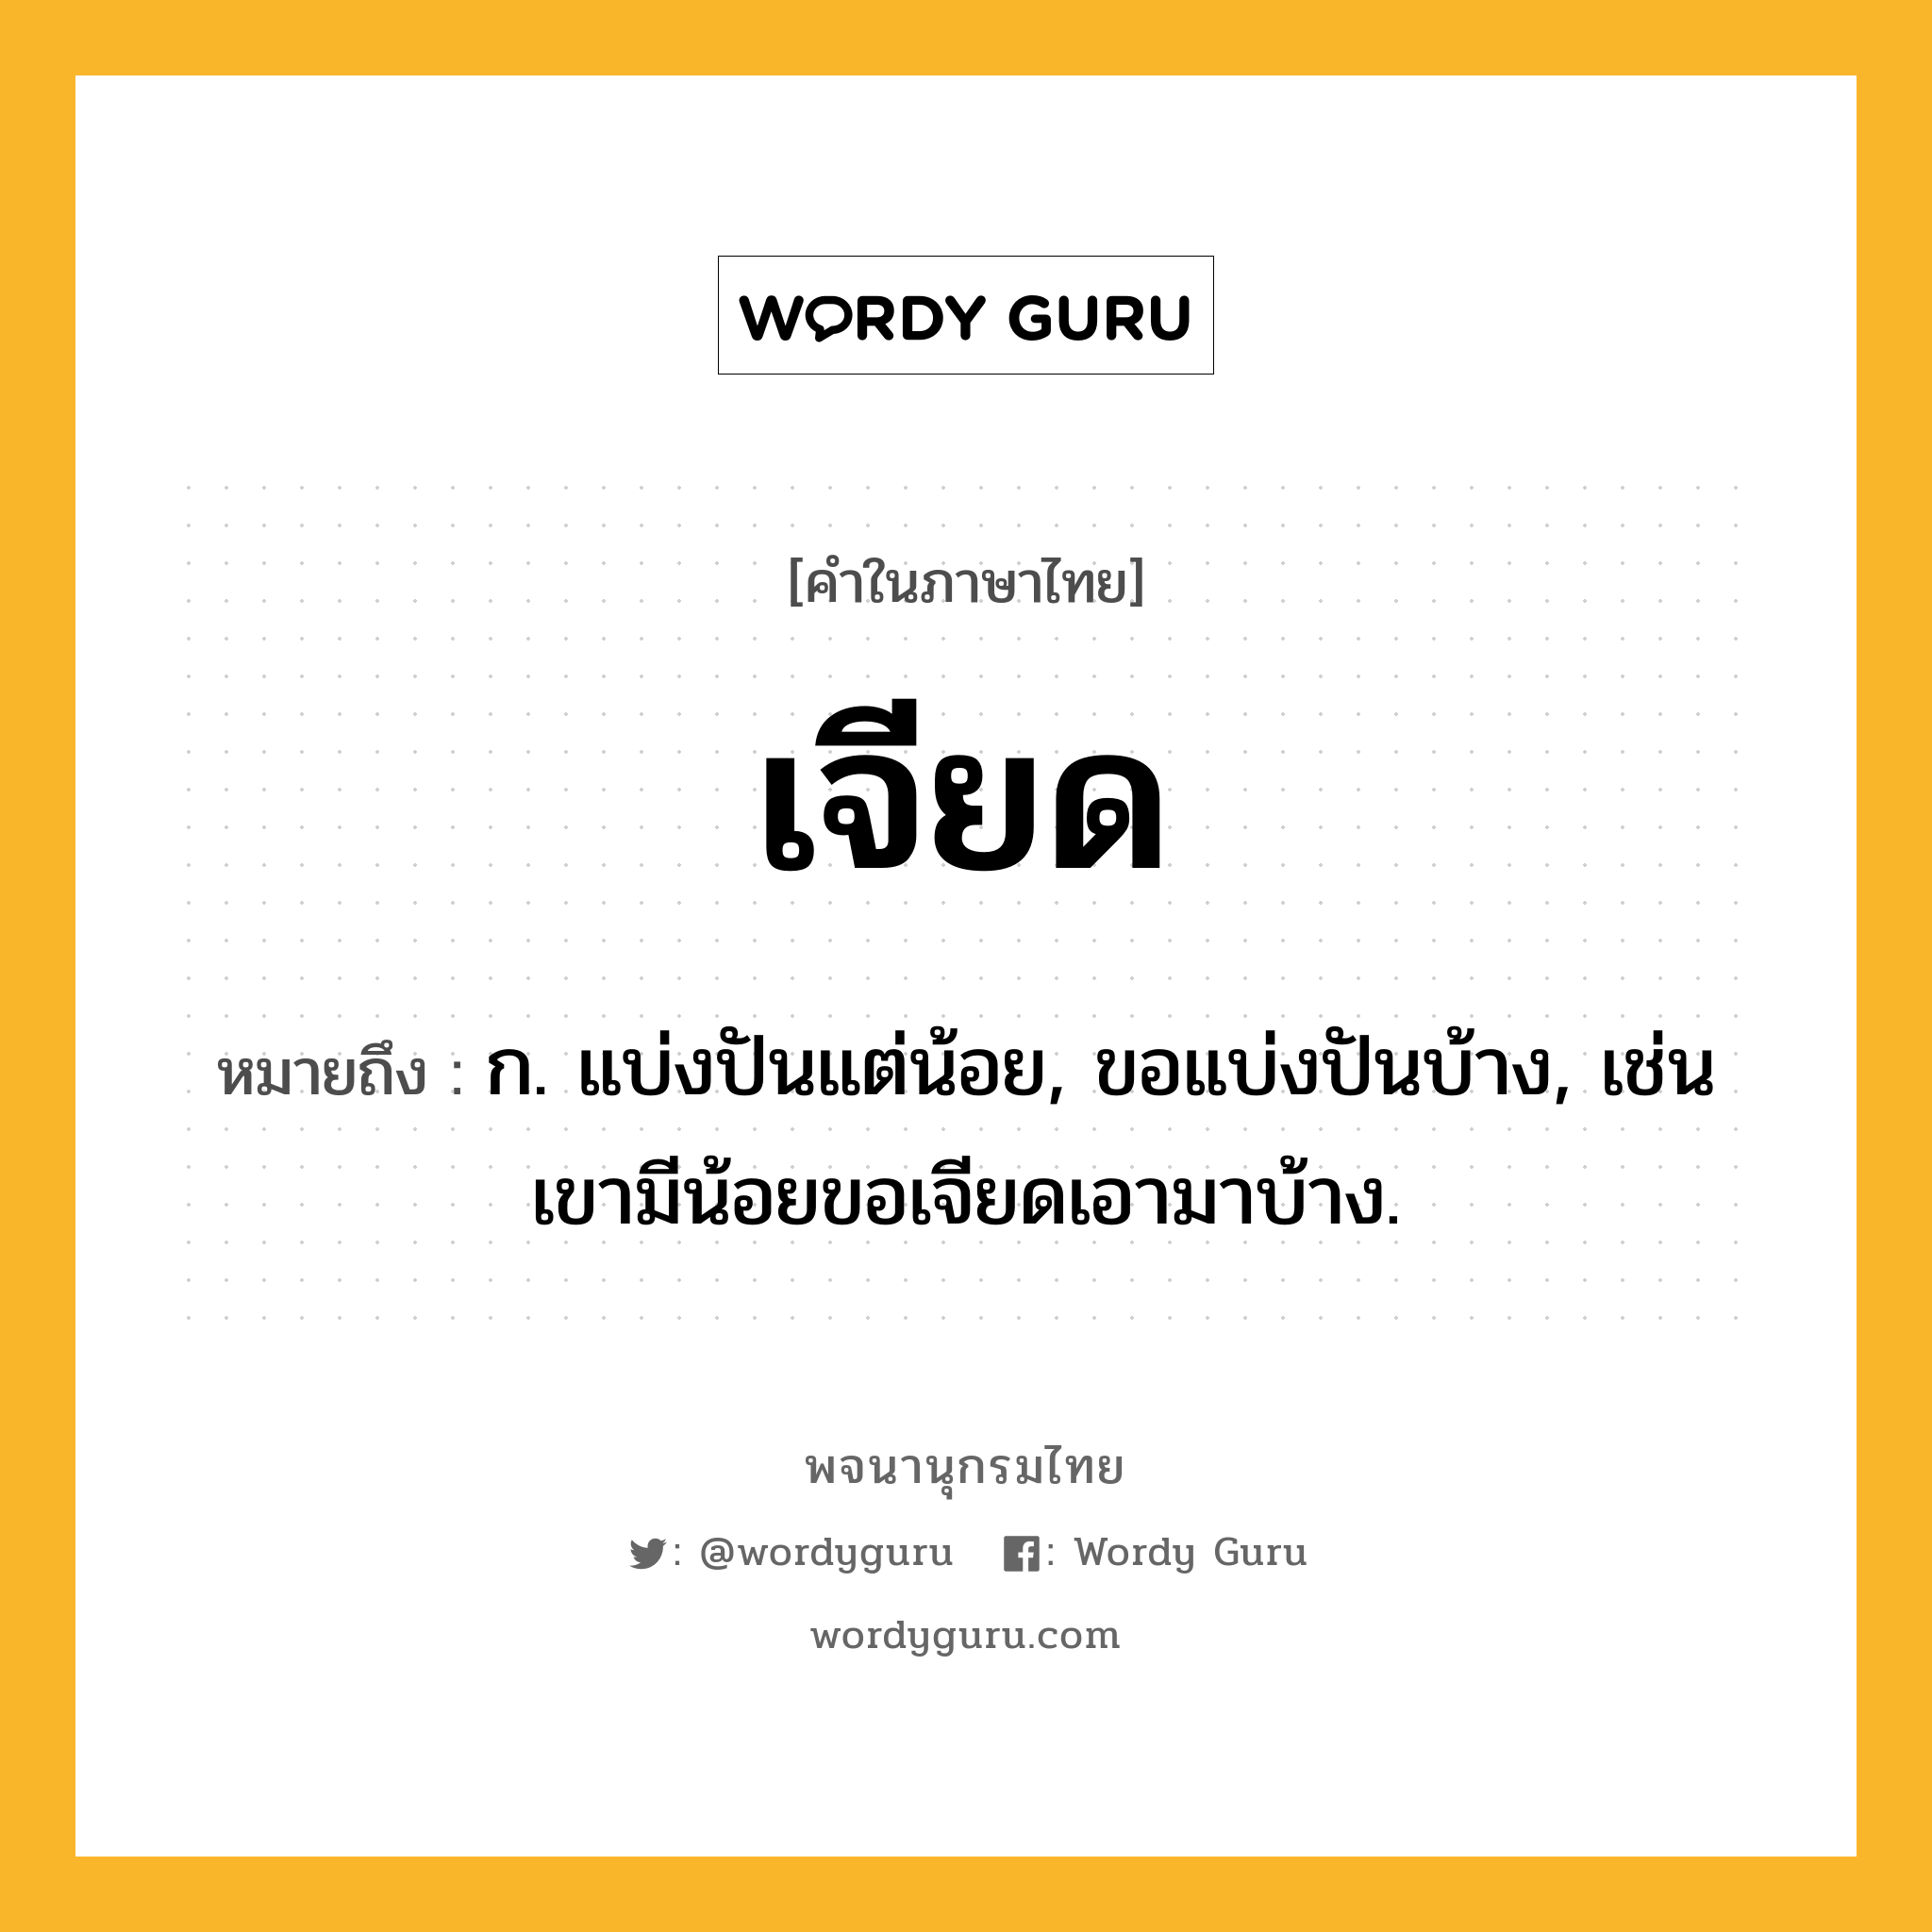 เจียด ความหมาย หมายถึงอะไร?, คำในภาษาไทย เจียด หมายถึง ก. แบ่งปันแต่น้อย, ขอแบ่งปันบ้าง, เช่น เขามีน้อยขอเจียดเอามาบ้าง.